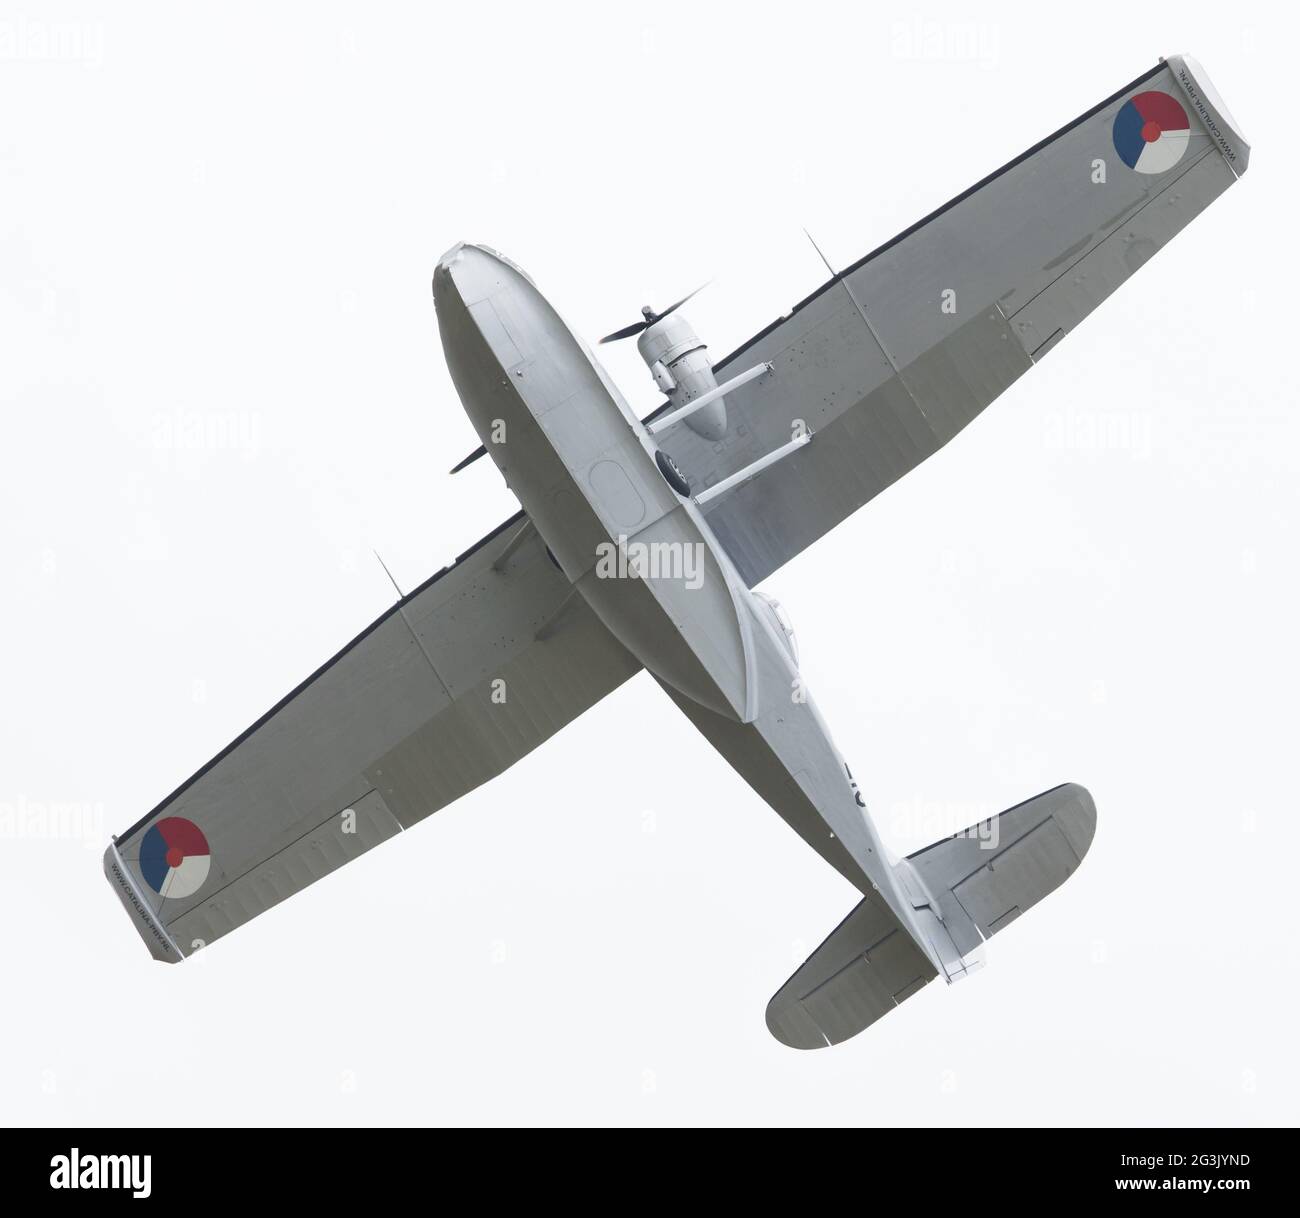 LEEUWARDEN, Niederlande - Juni 10: Consolidated PBY Catalina in niederländische Marine Farben Royal niederländischen Luftwaffe Tage fliegen Stockfoto